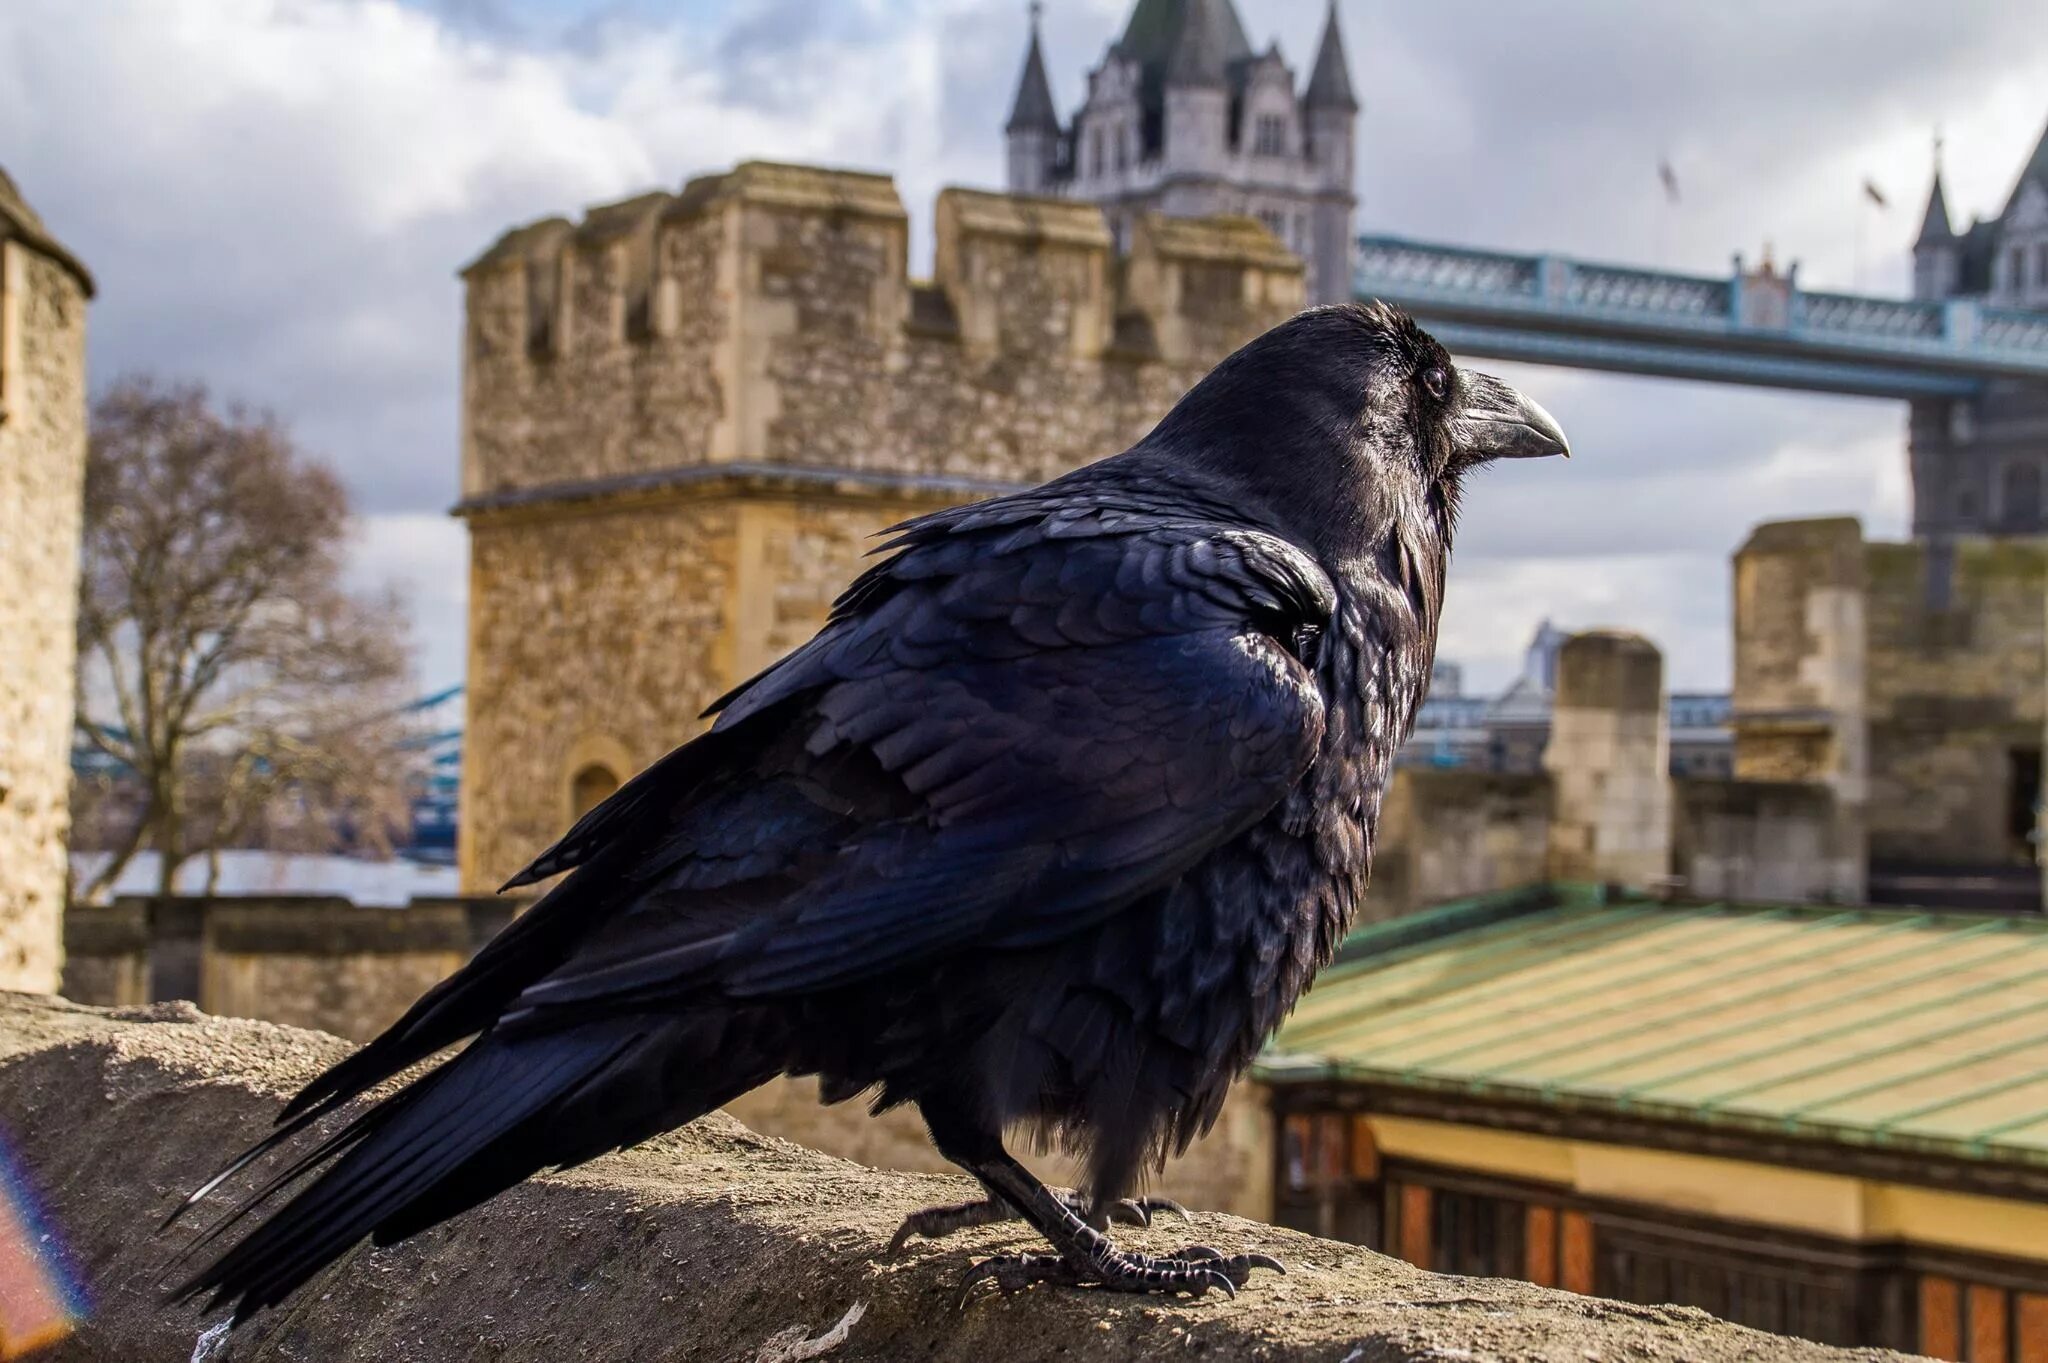 Тауэр в Лондоне вороны. Лондонский Тауэр черные вороны. Вороны в лондонском Тауэре. Вороны на башне Тауэр в Лондоне. The ravens are the unique guardians